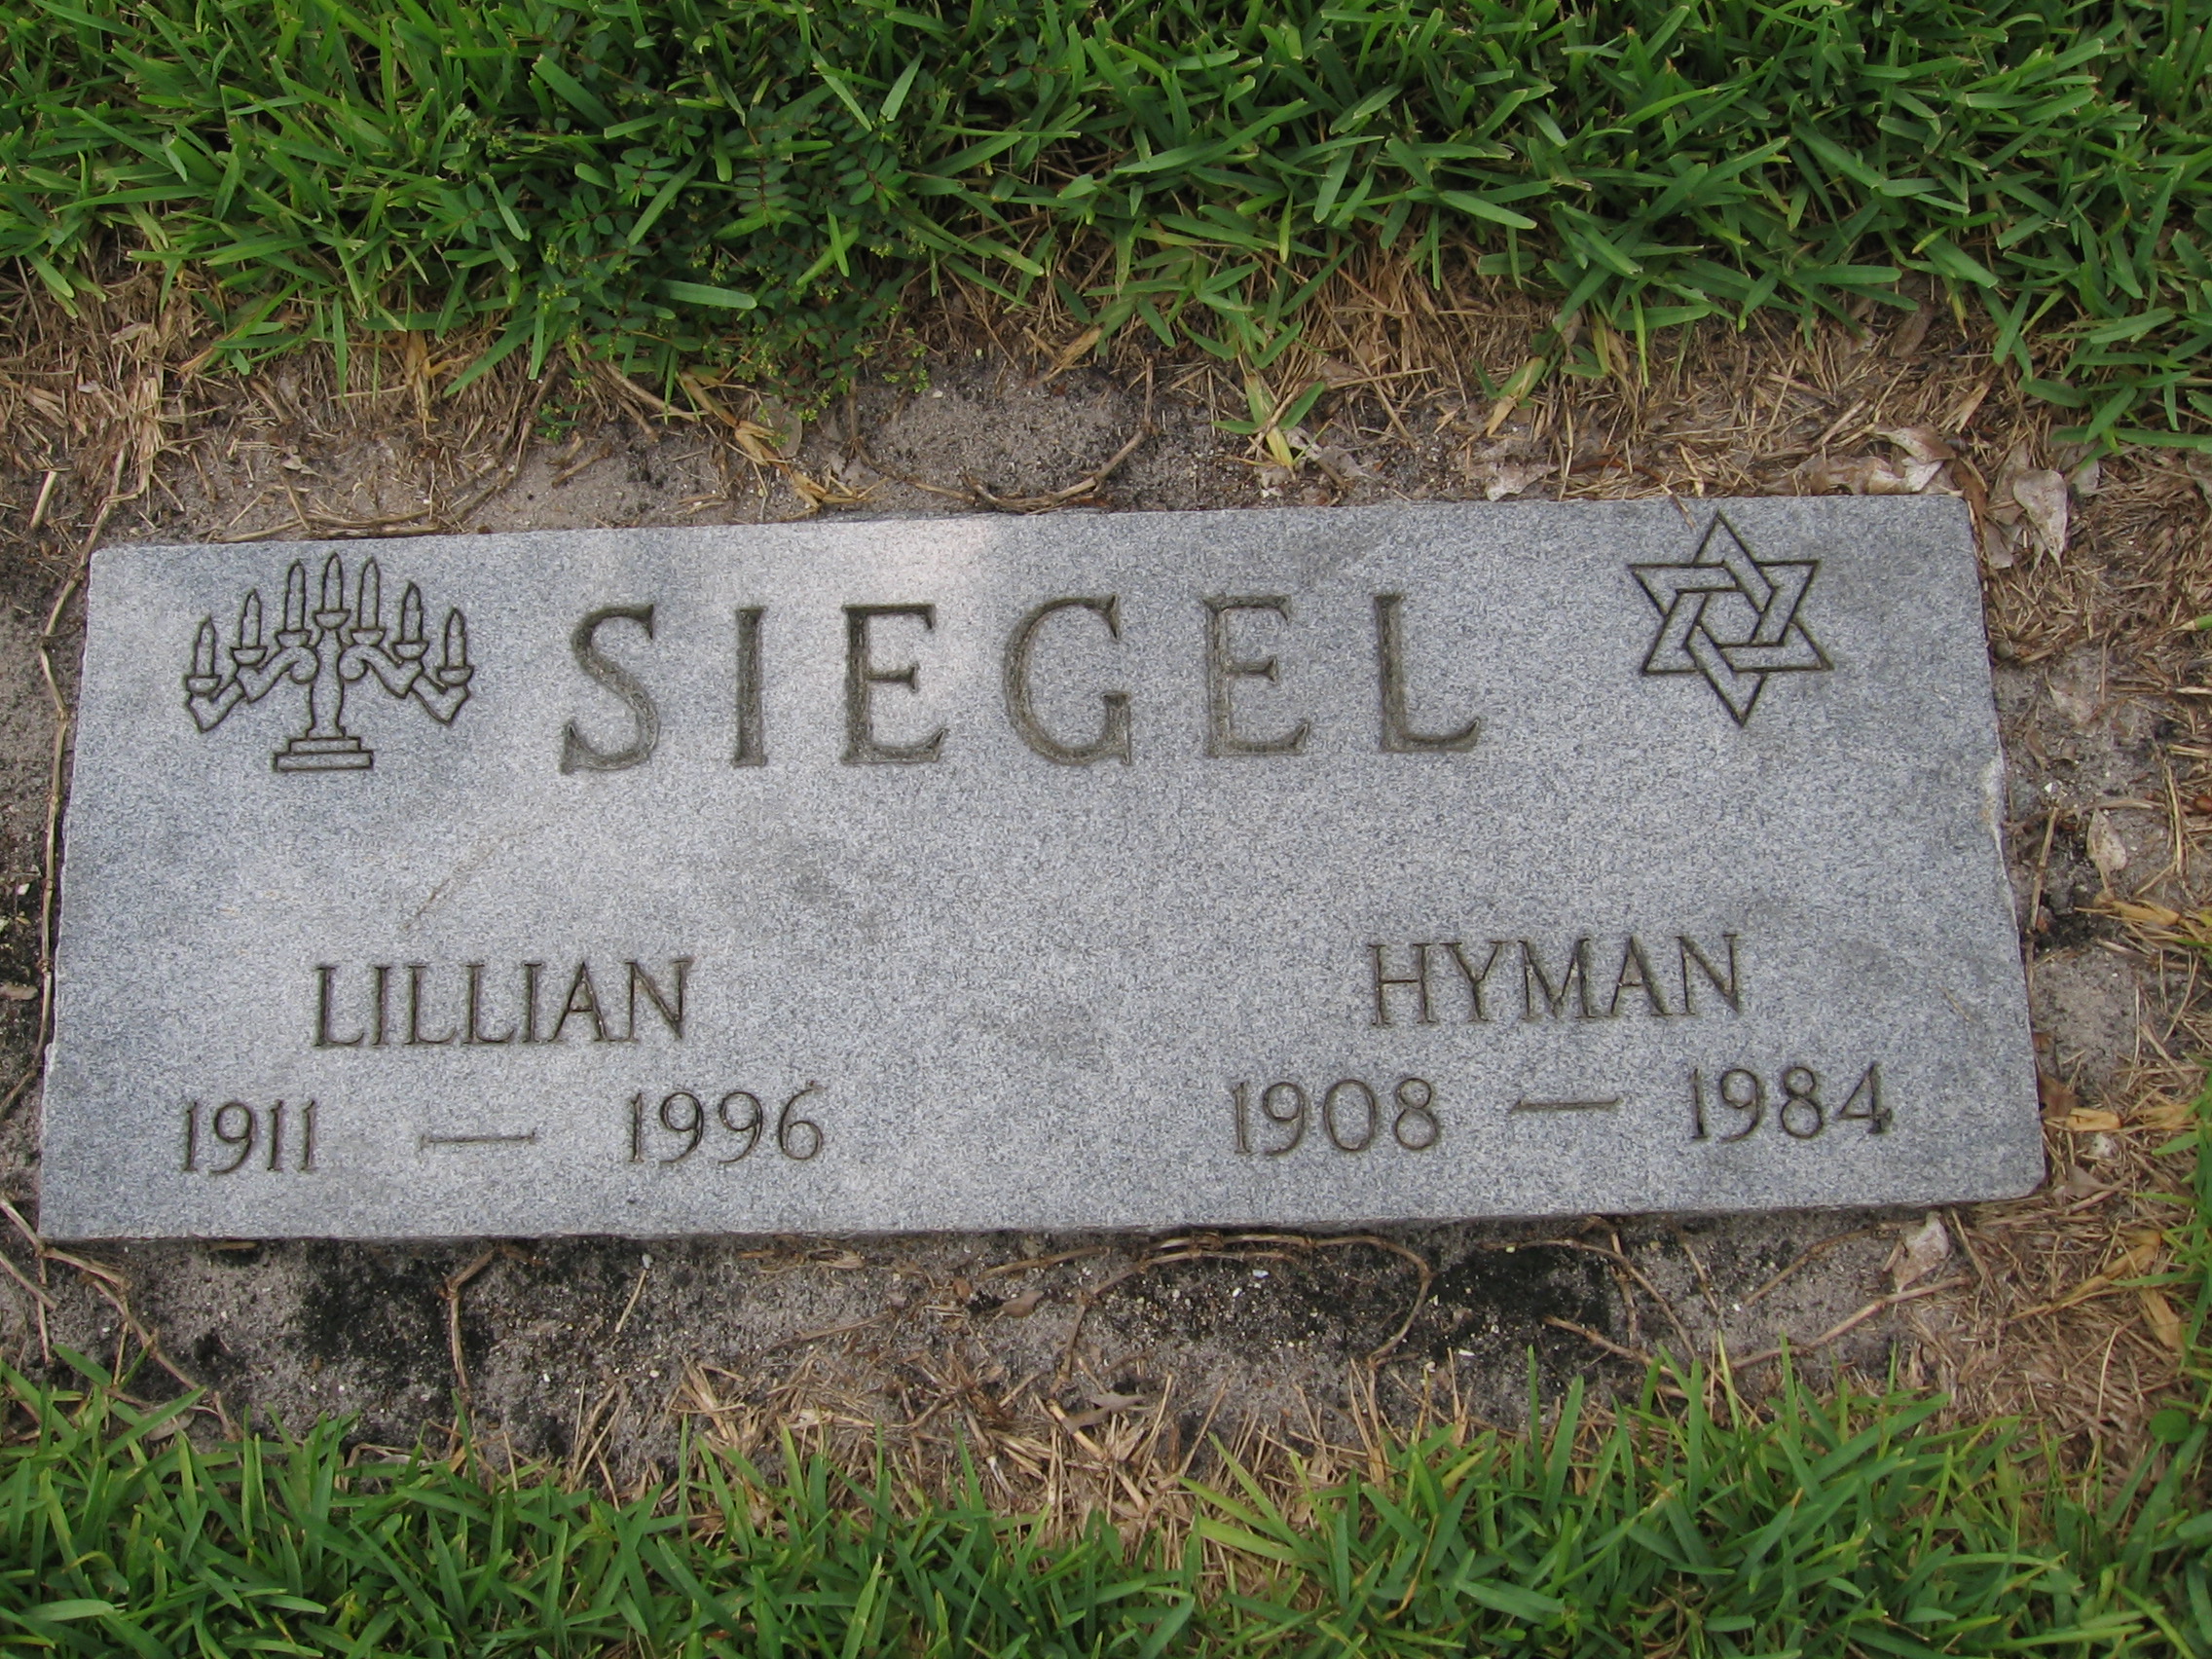 Lillian Siegel